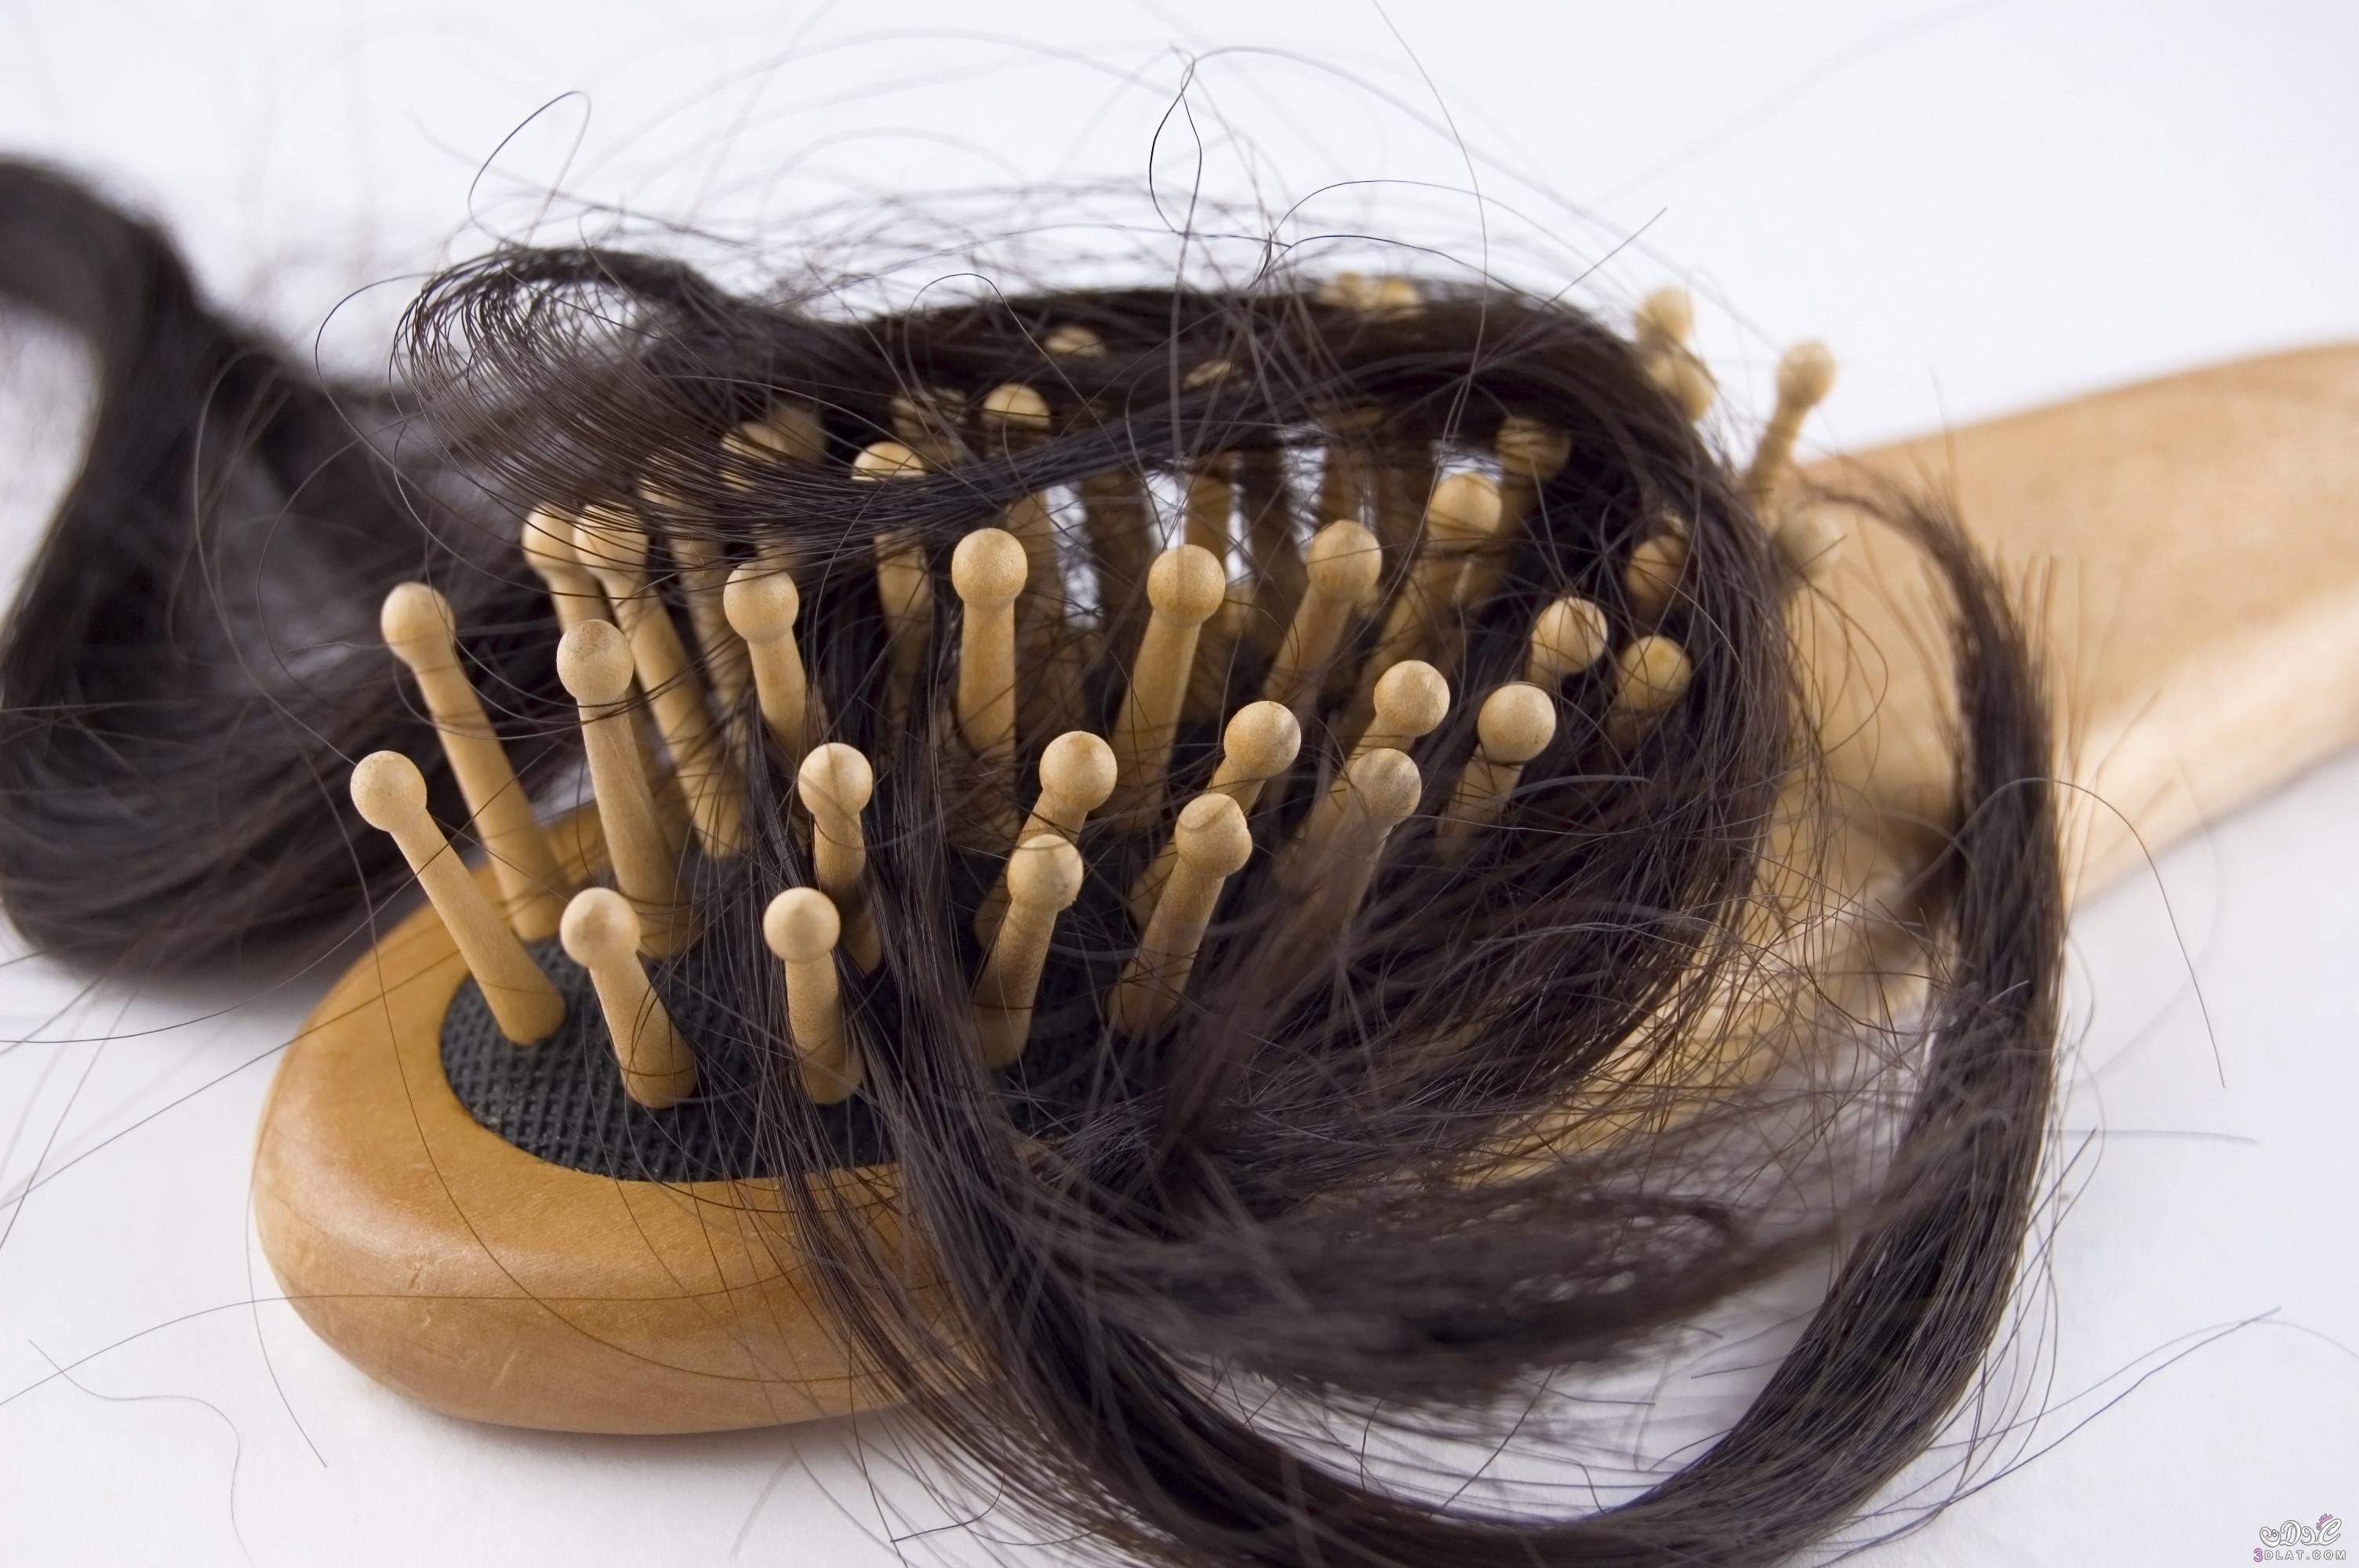 وصفات طبيعية لعلاج  لتساقط الشعر, أفضل الوصفات الطبيعية لعلاج  لتساقط الشعر